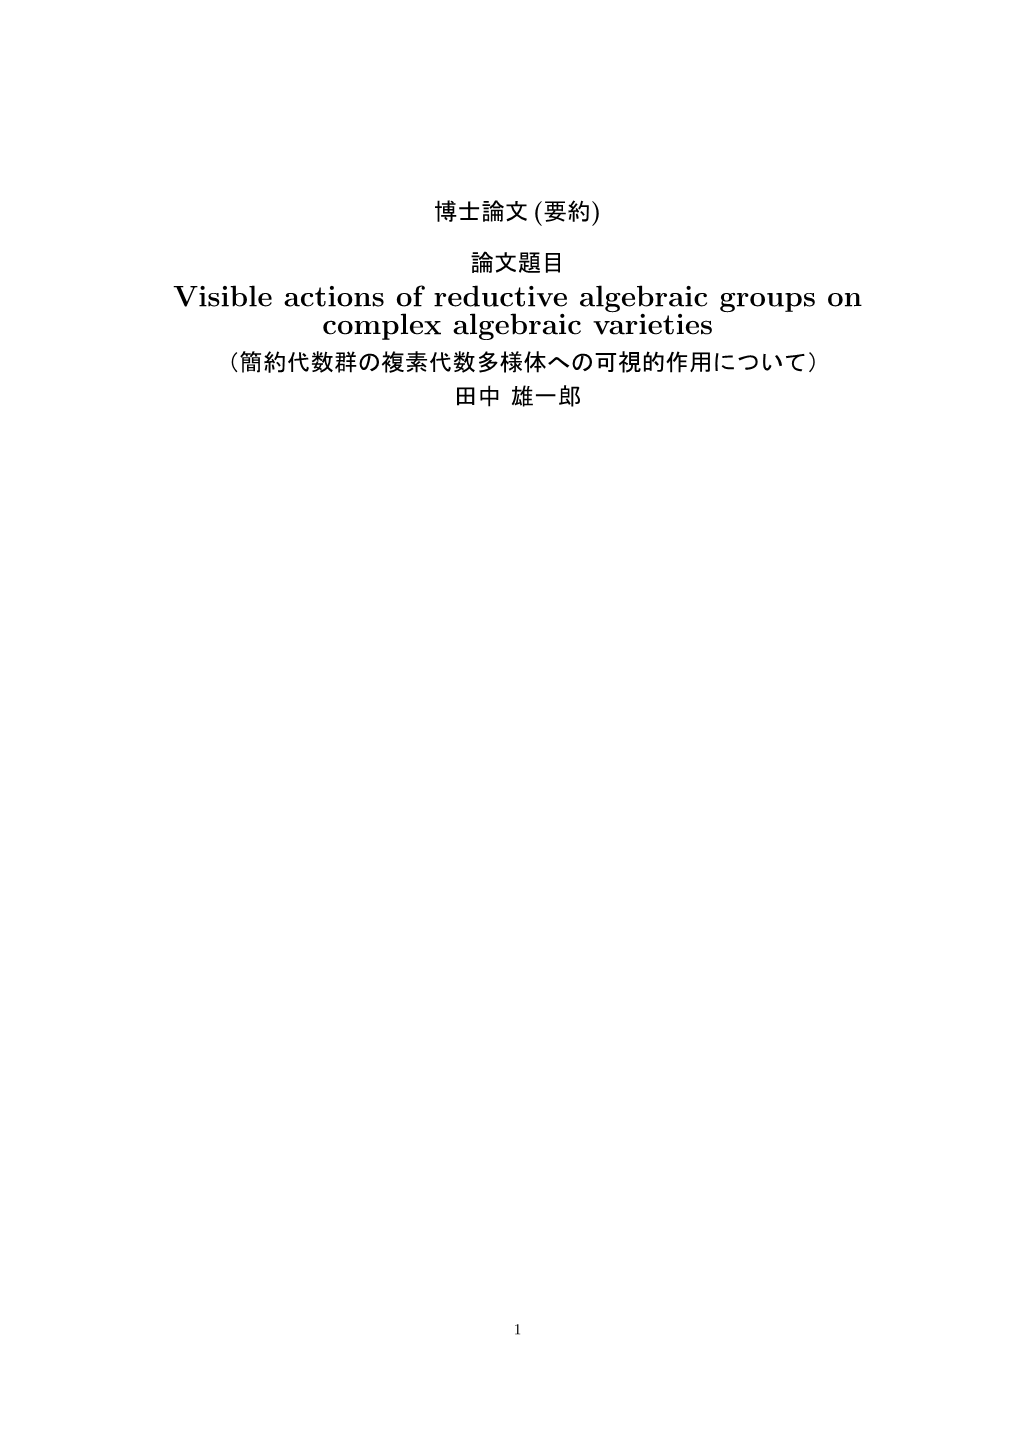 Visible Actions of Reductive Algebraic Groups on Complex Algebraic Varieties （簡約代数群の複素代数多様体への可視的作用について） 田中雄一郎